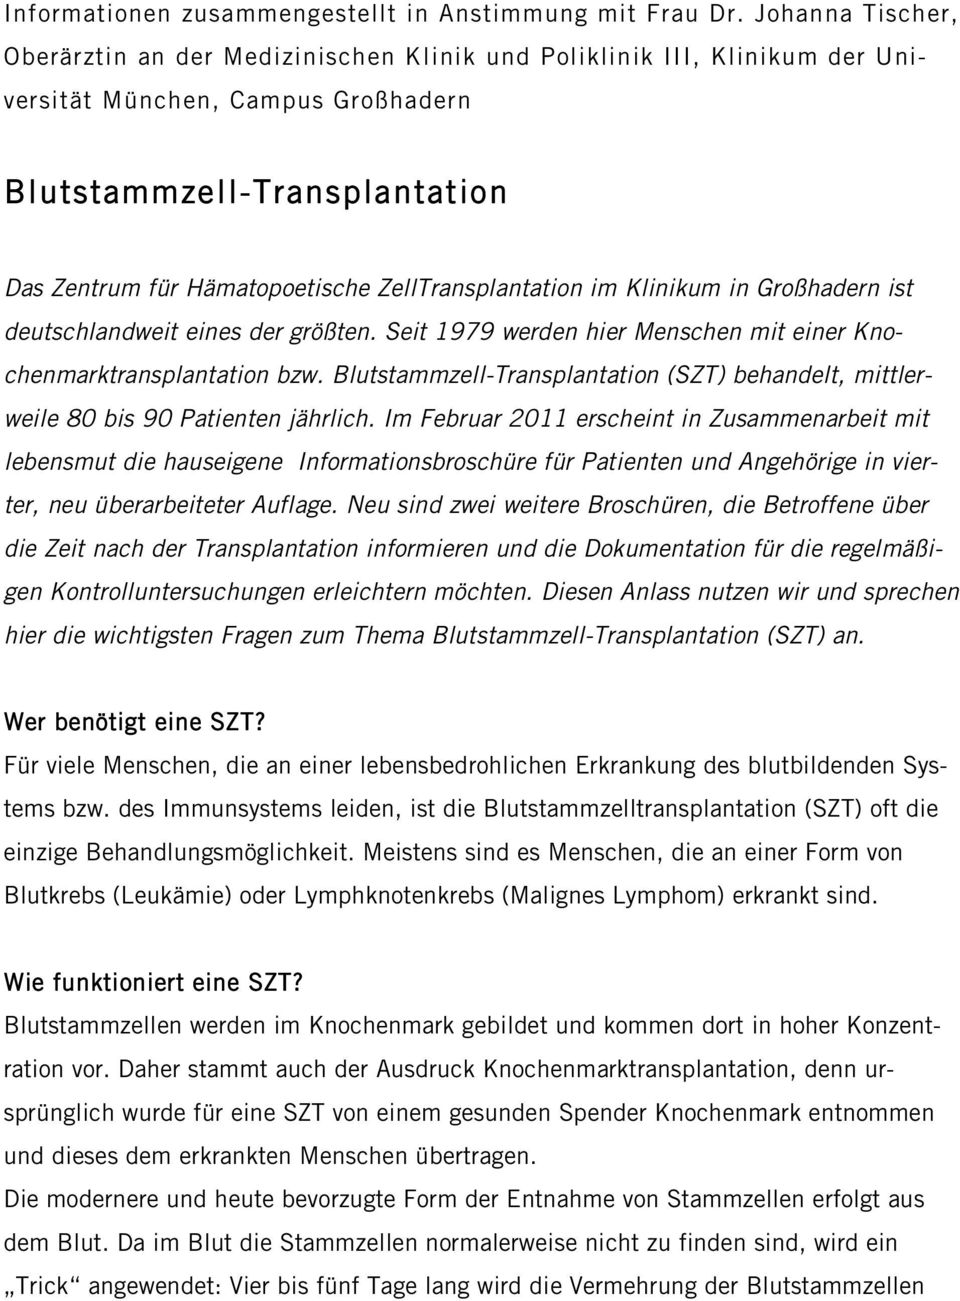 ZellTransplantation im Klinikum in Großhadern ist deutschlandweit eines der größten. Seit 1979 werden hier Menschen mit einer Knochenmarktransplantation bzw.